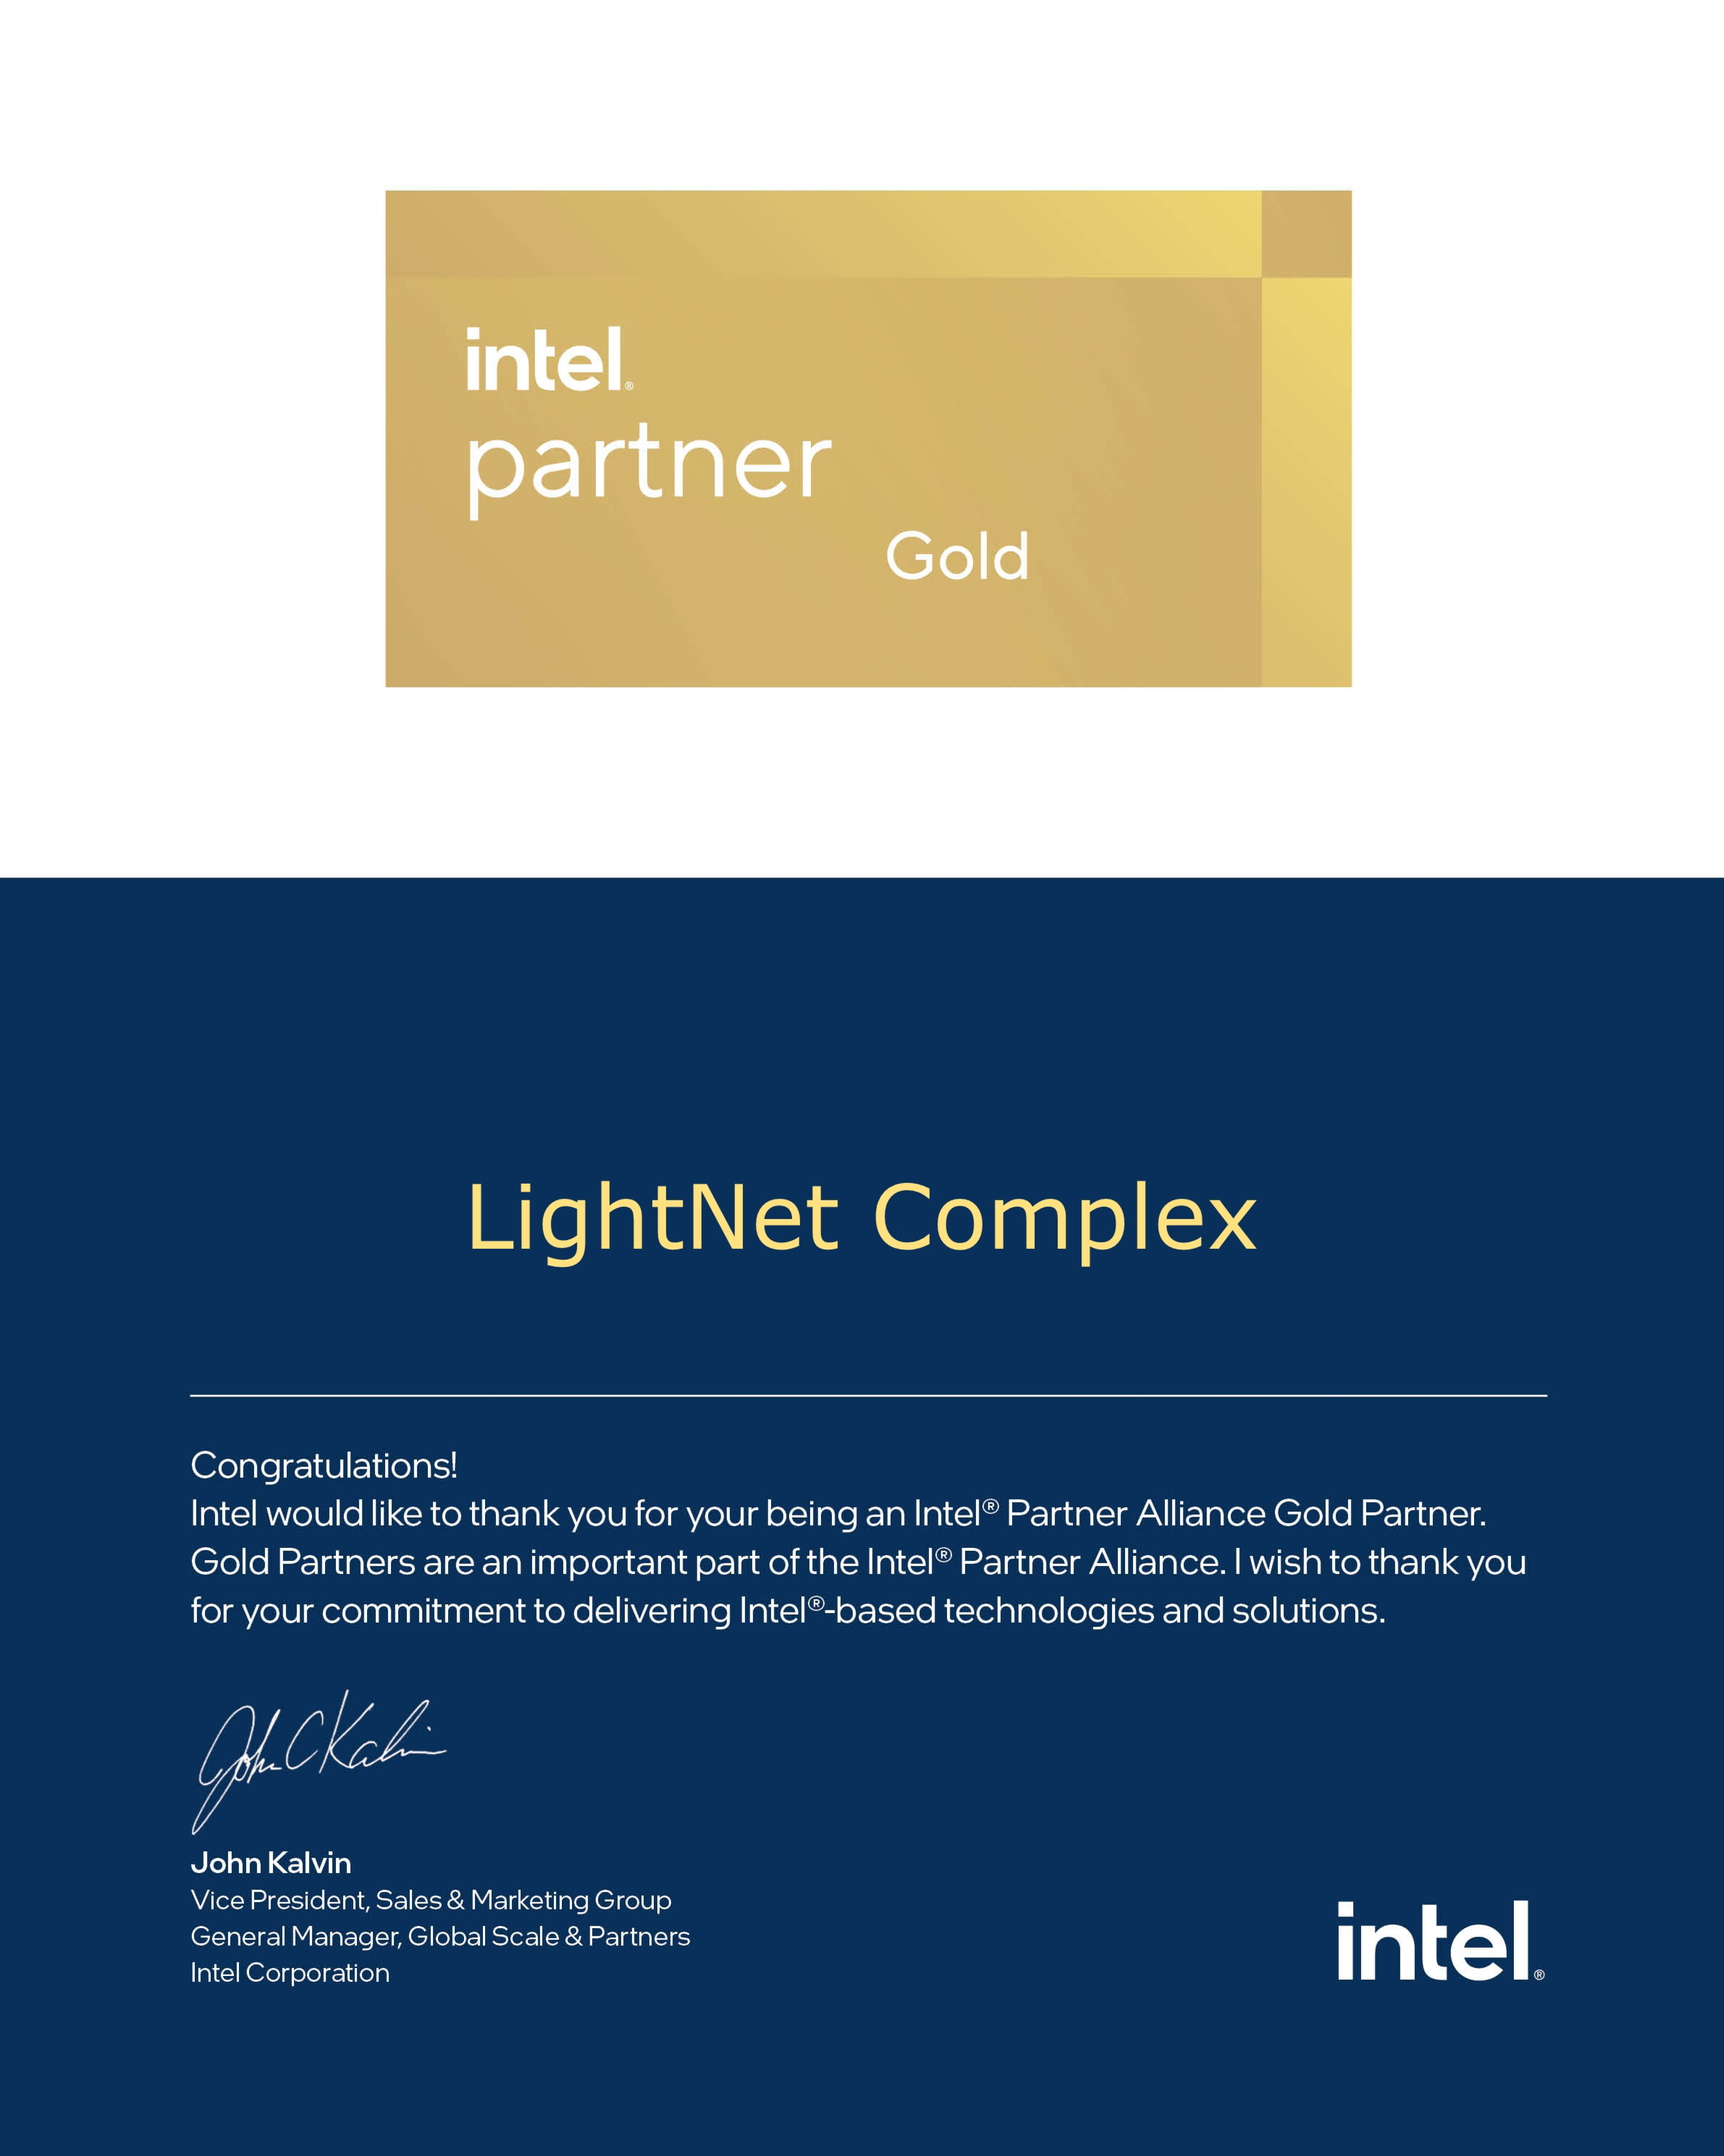 Intel - Gold Partner